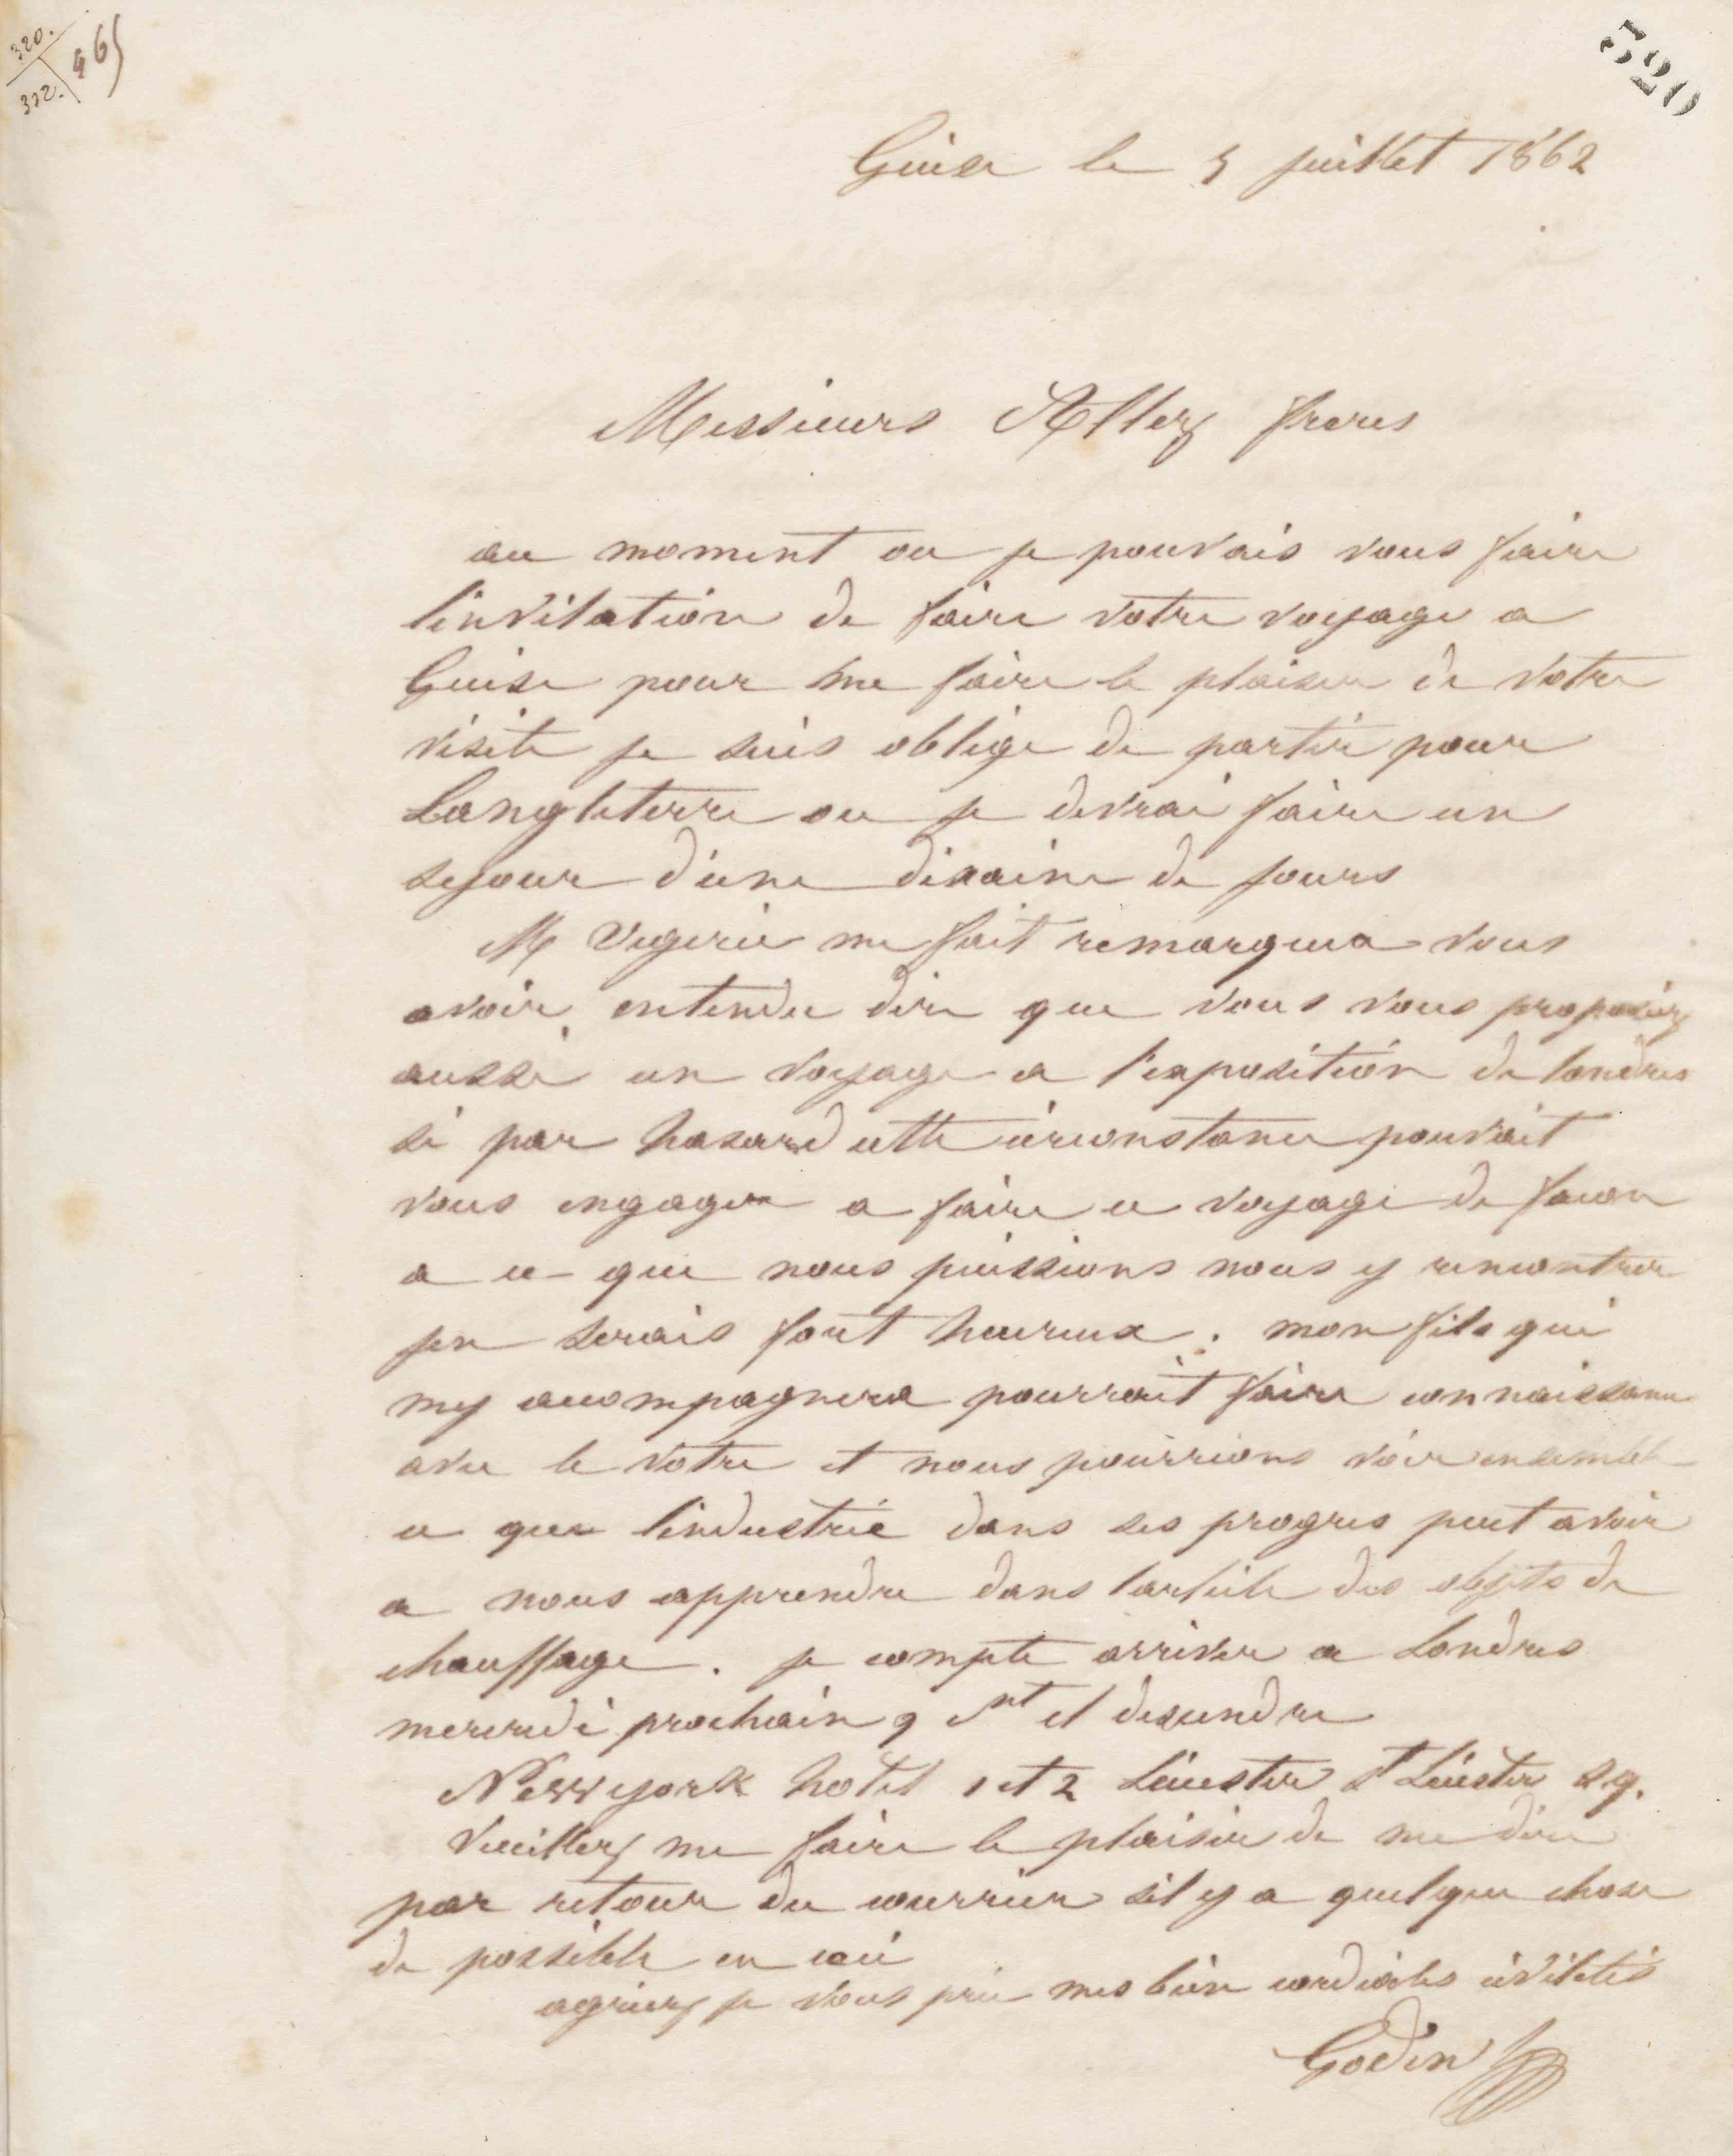 Jean-Baptiste André Godin à messieurs Allez frères, 5 juillet 1862